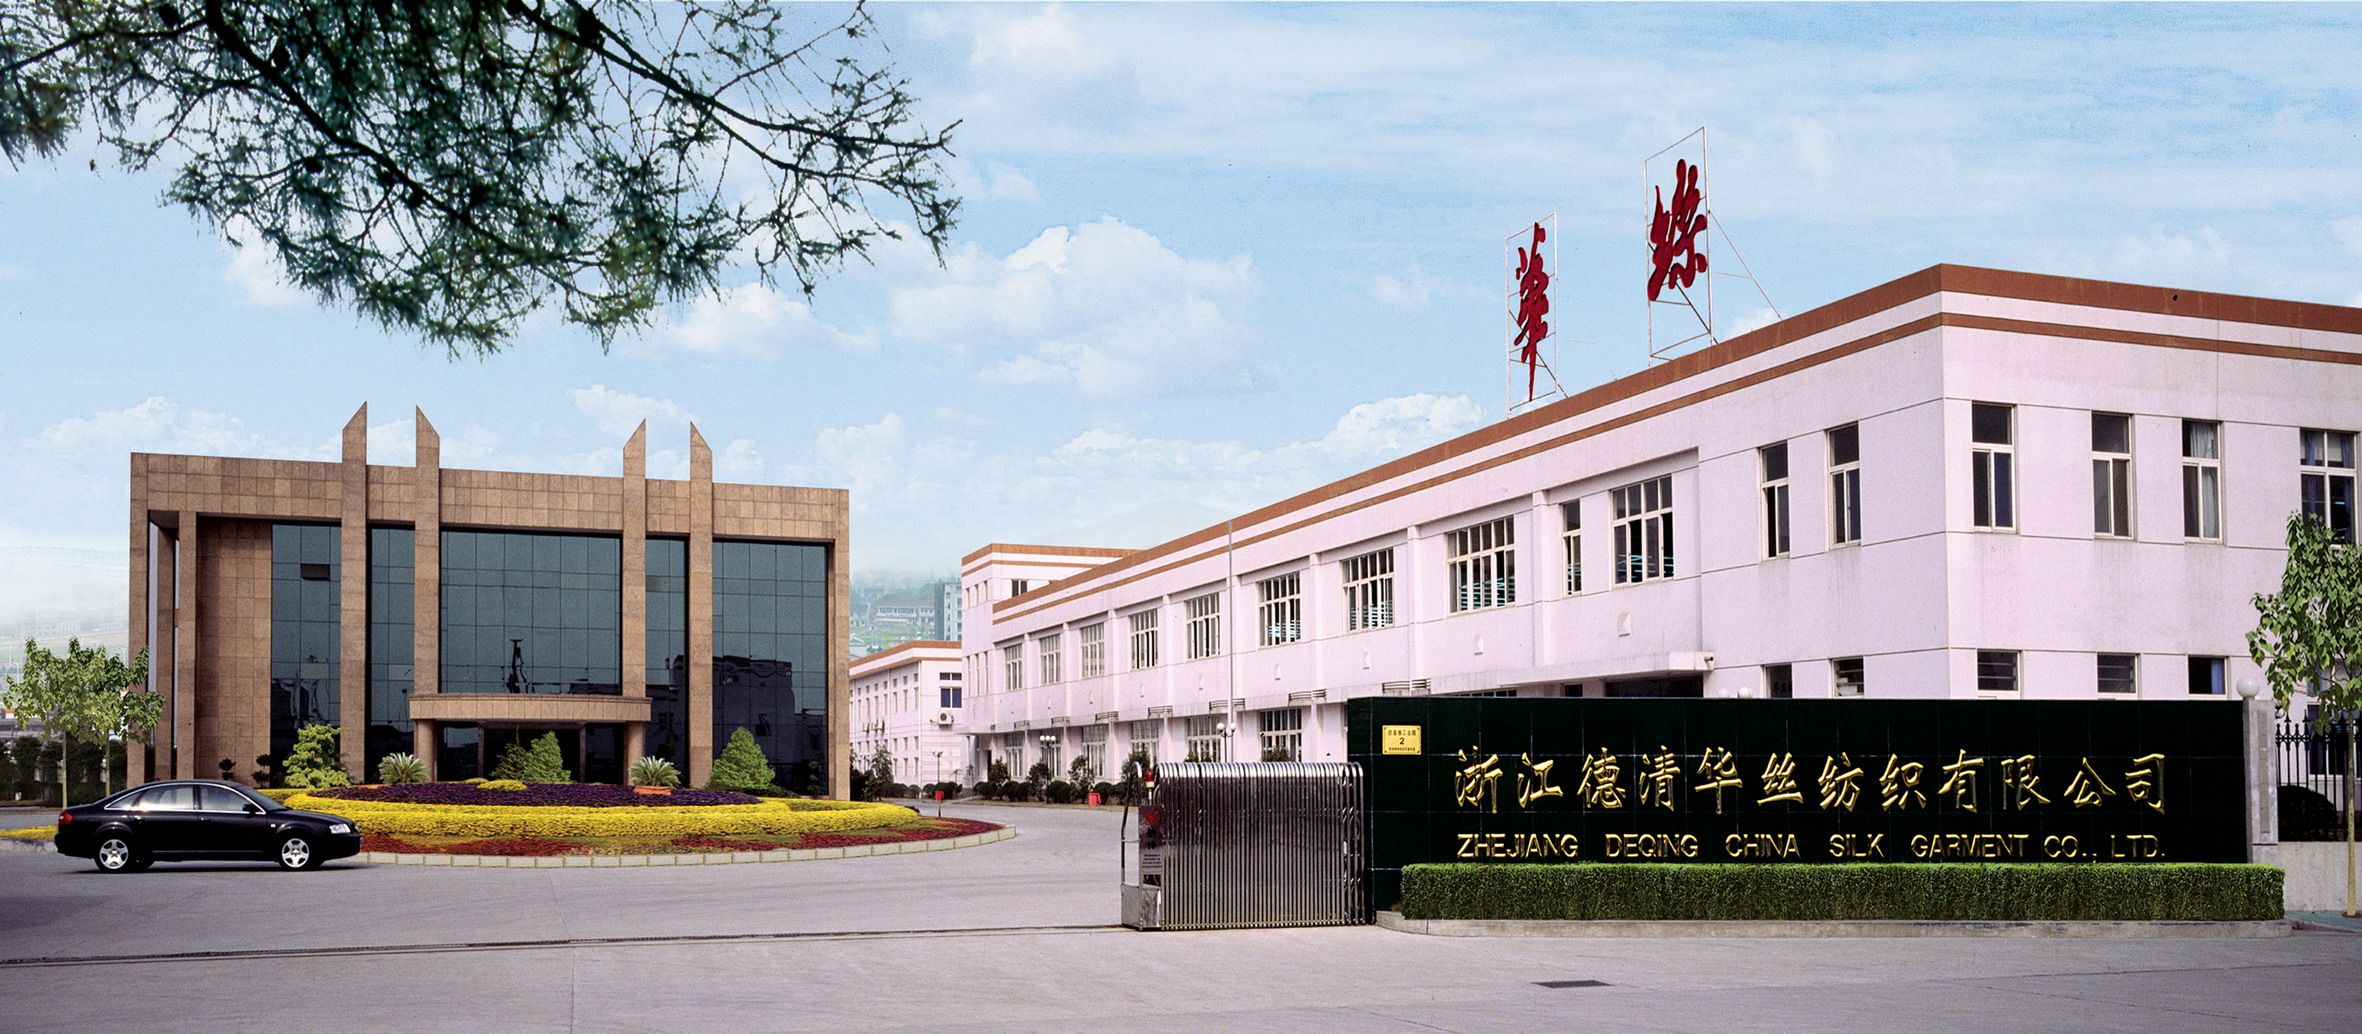 Zhejiang Deqing China Silk Garment Co., Ltd.